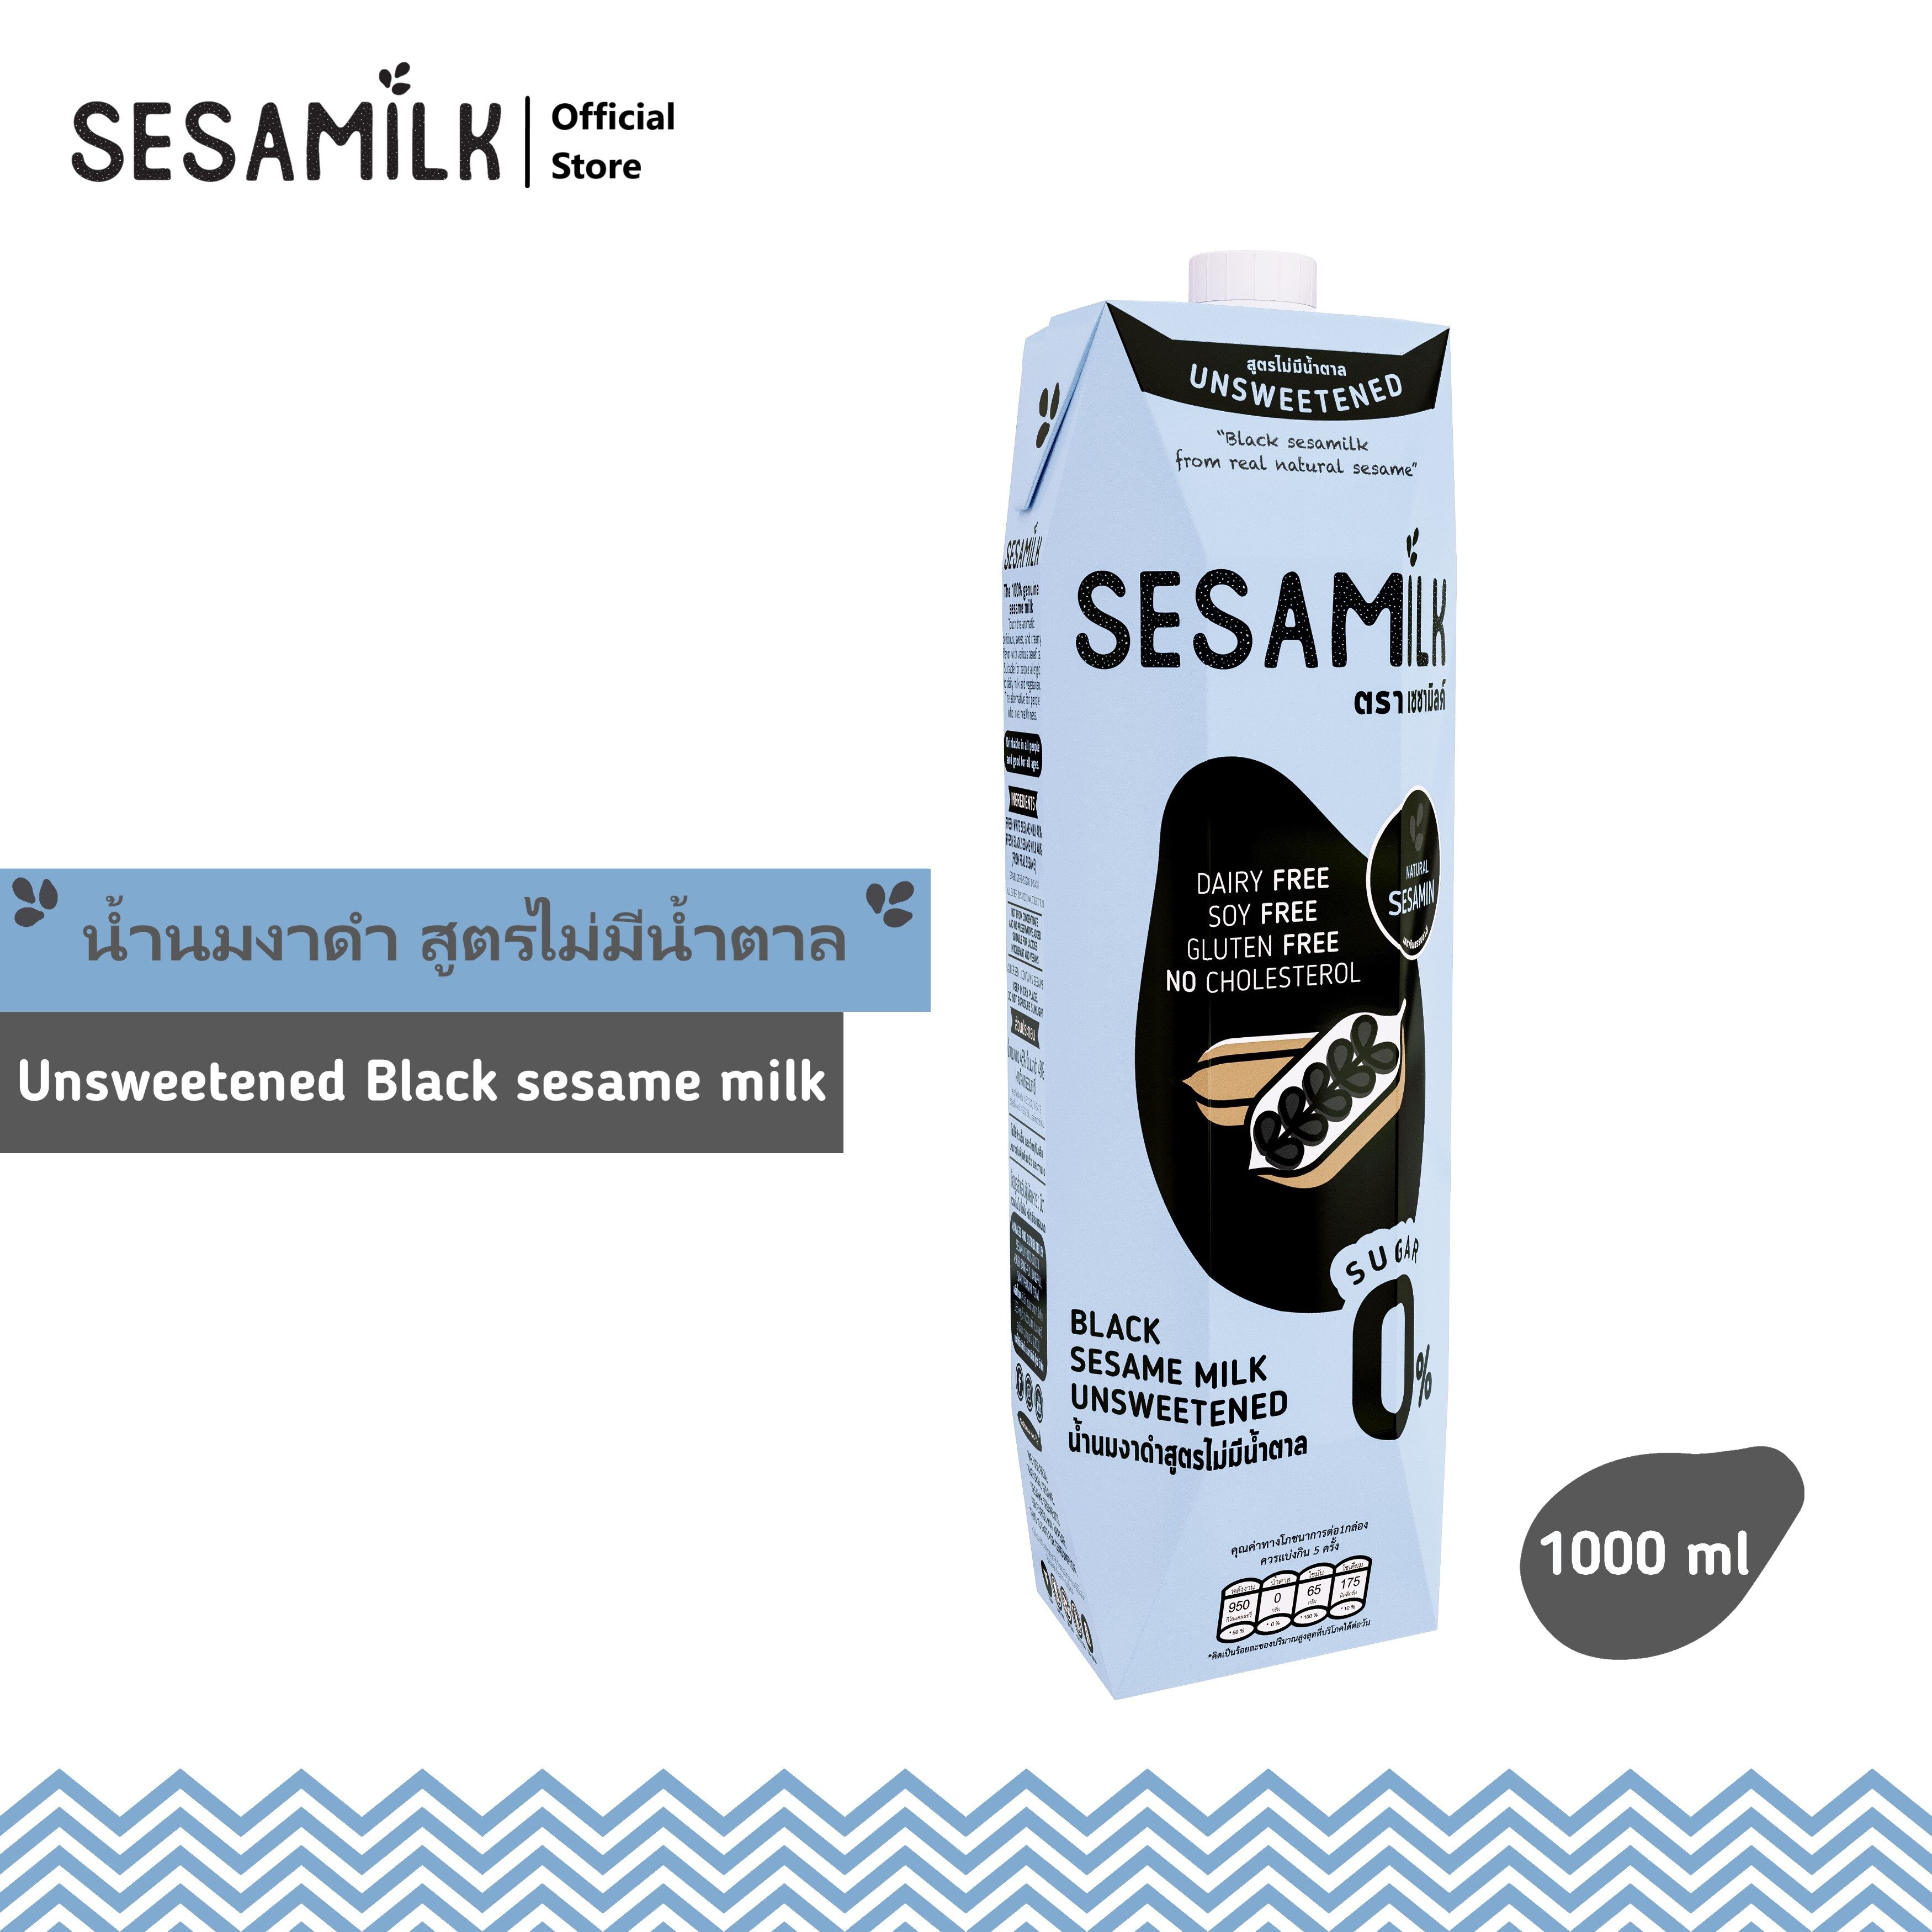 เซซามิลค์ น้ำนมงาดำ สูตรไม่มีน้ำตาล 1000ml Sesamilk Unsweetened Black sesame milk 1000ml